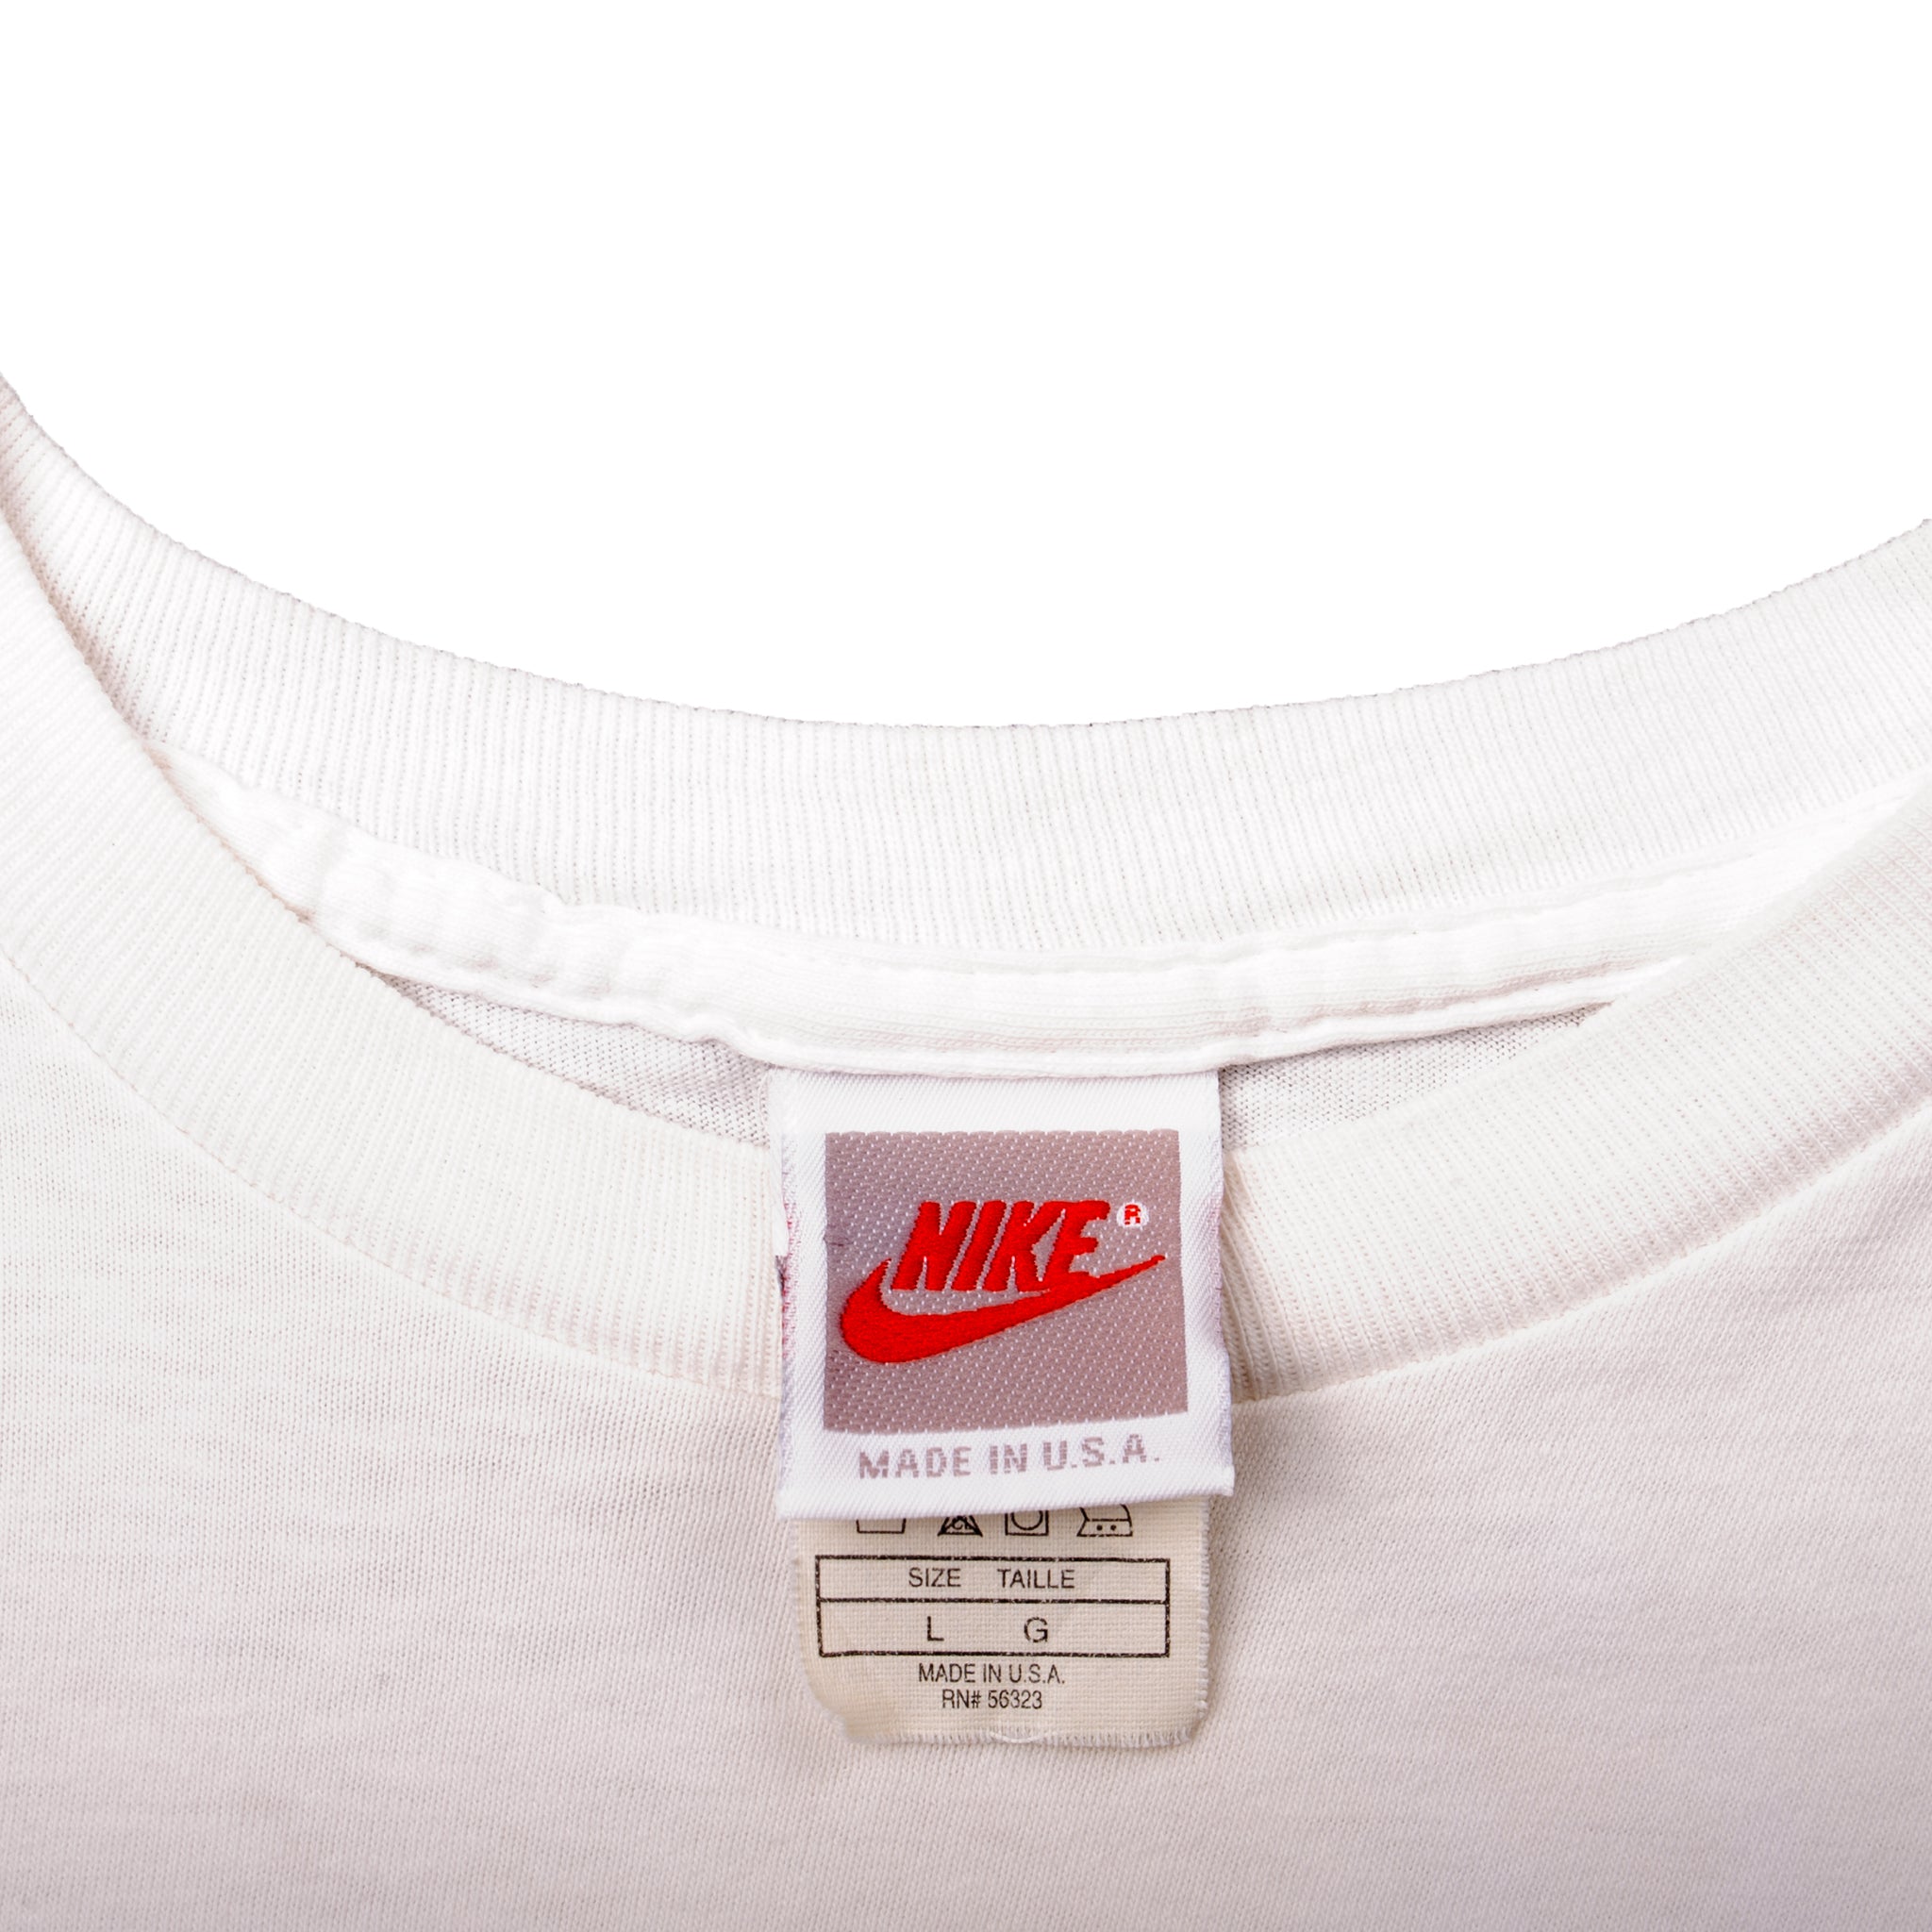 Vintage Nike Chicago Niketown Men's XL T-shirt 